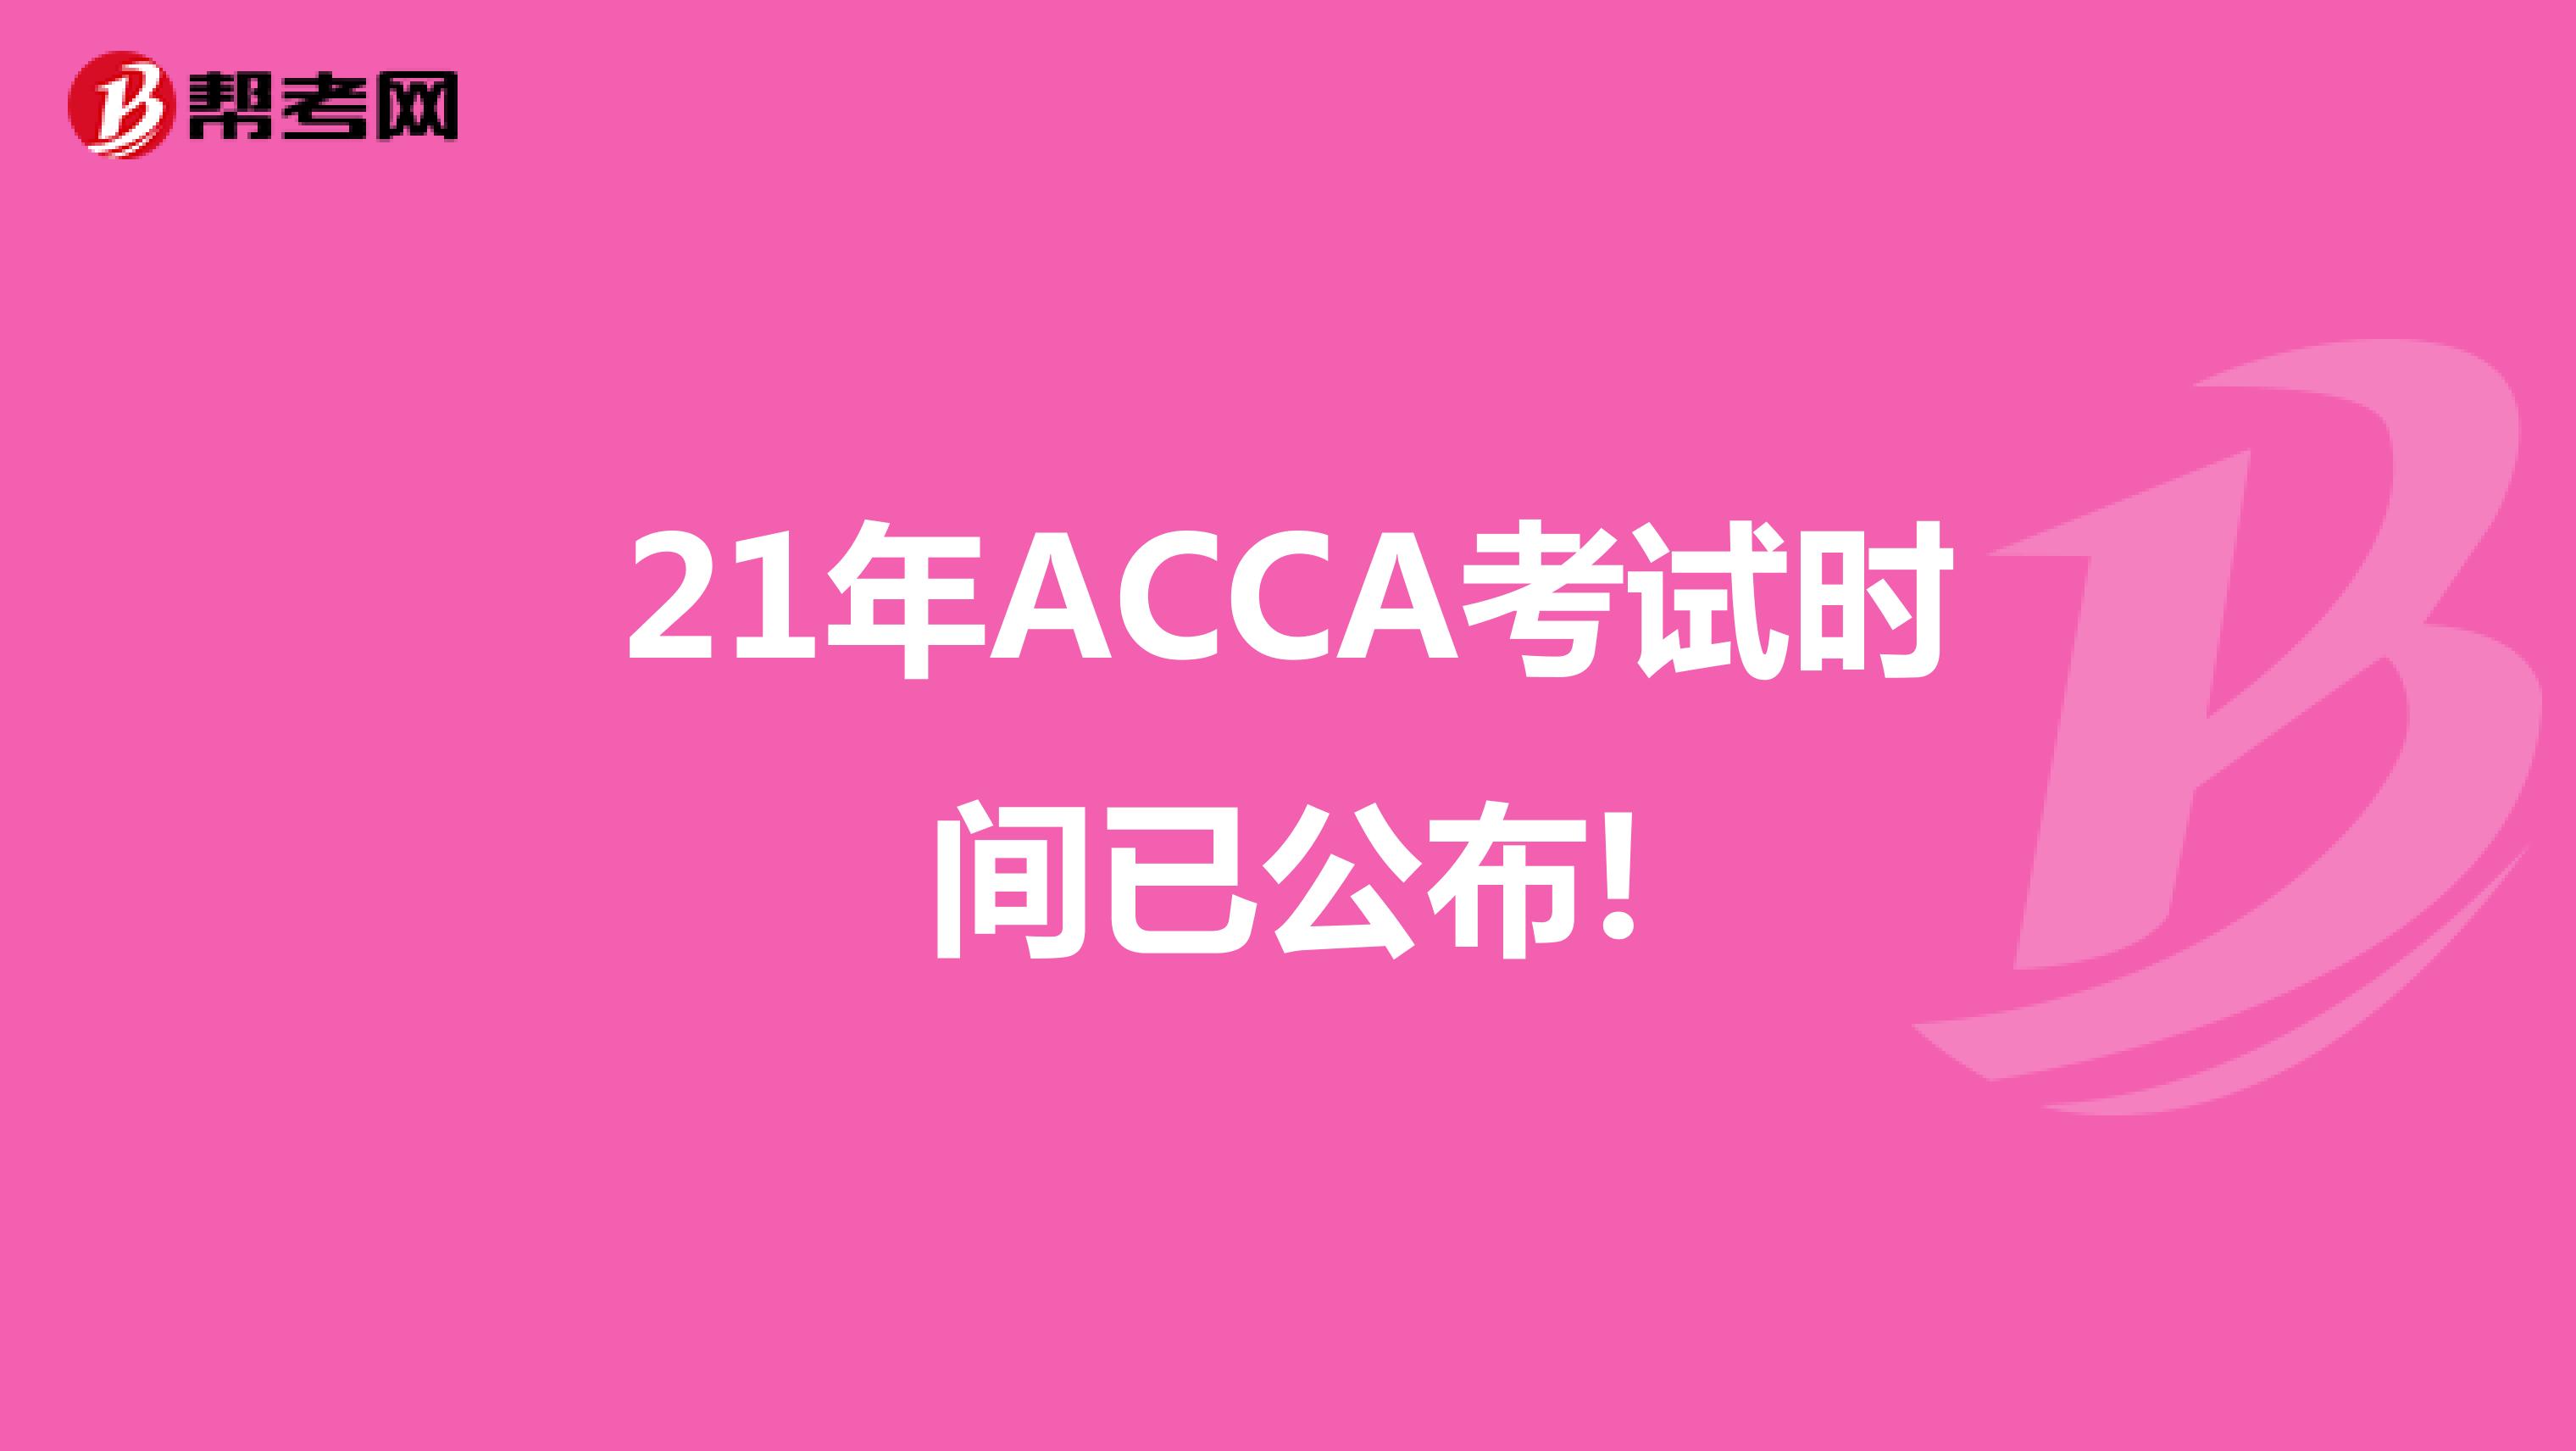 21年ACCA考试时间已公布!